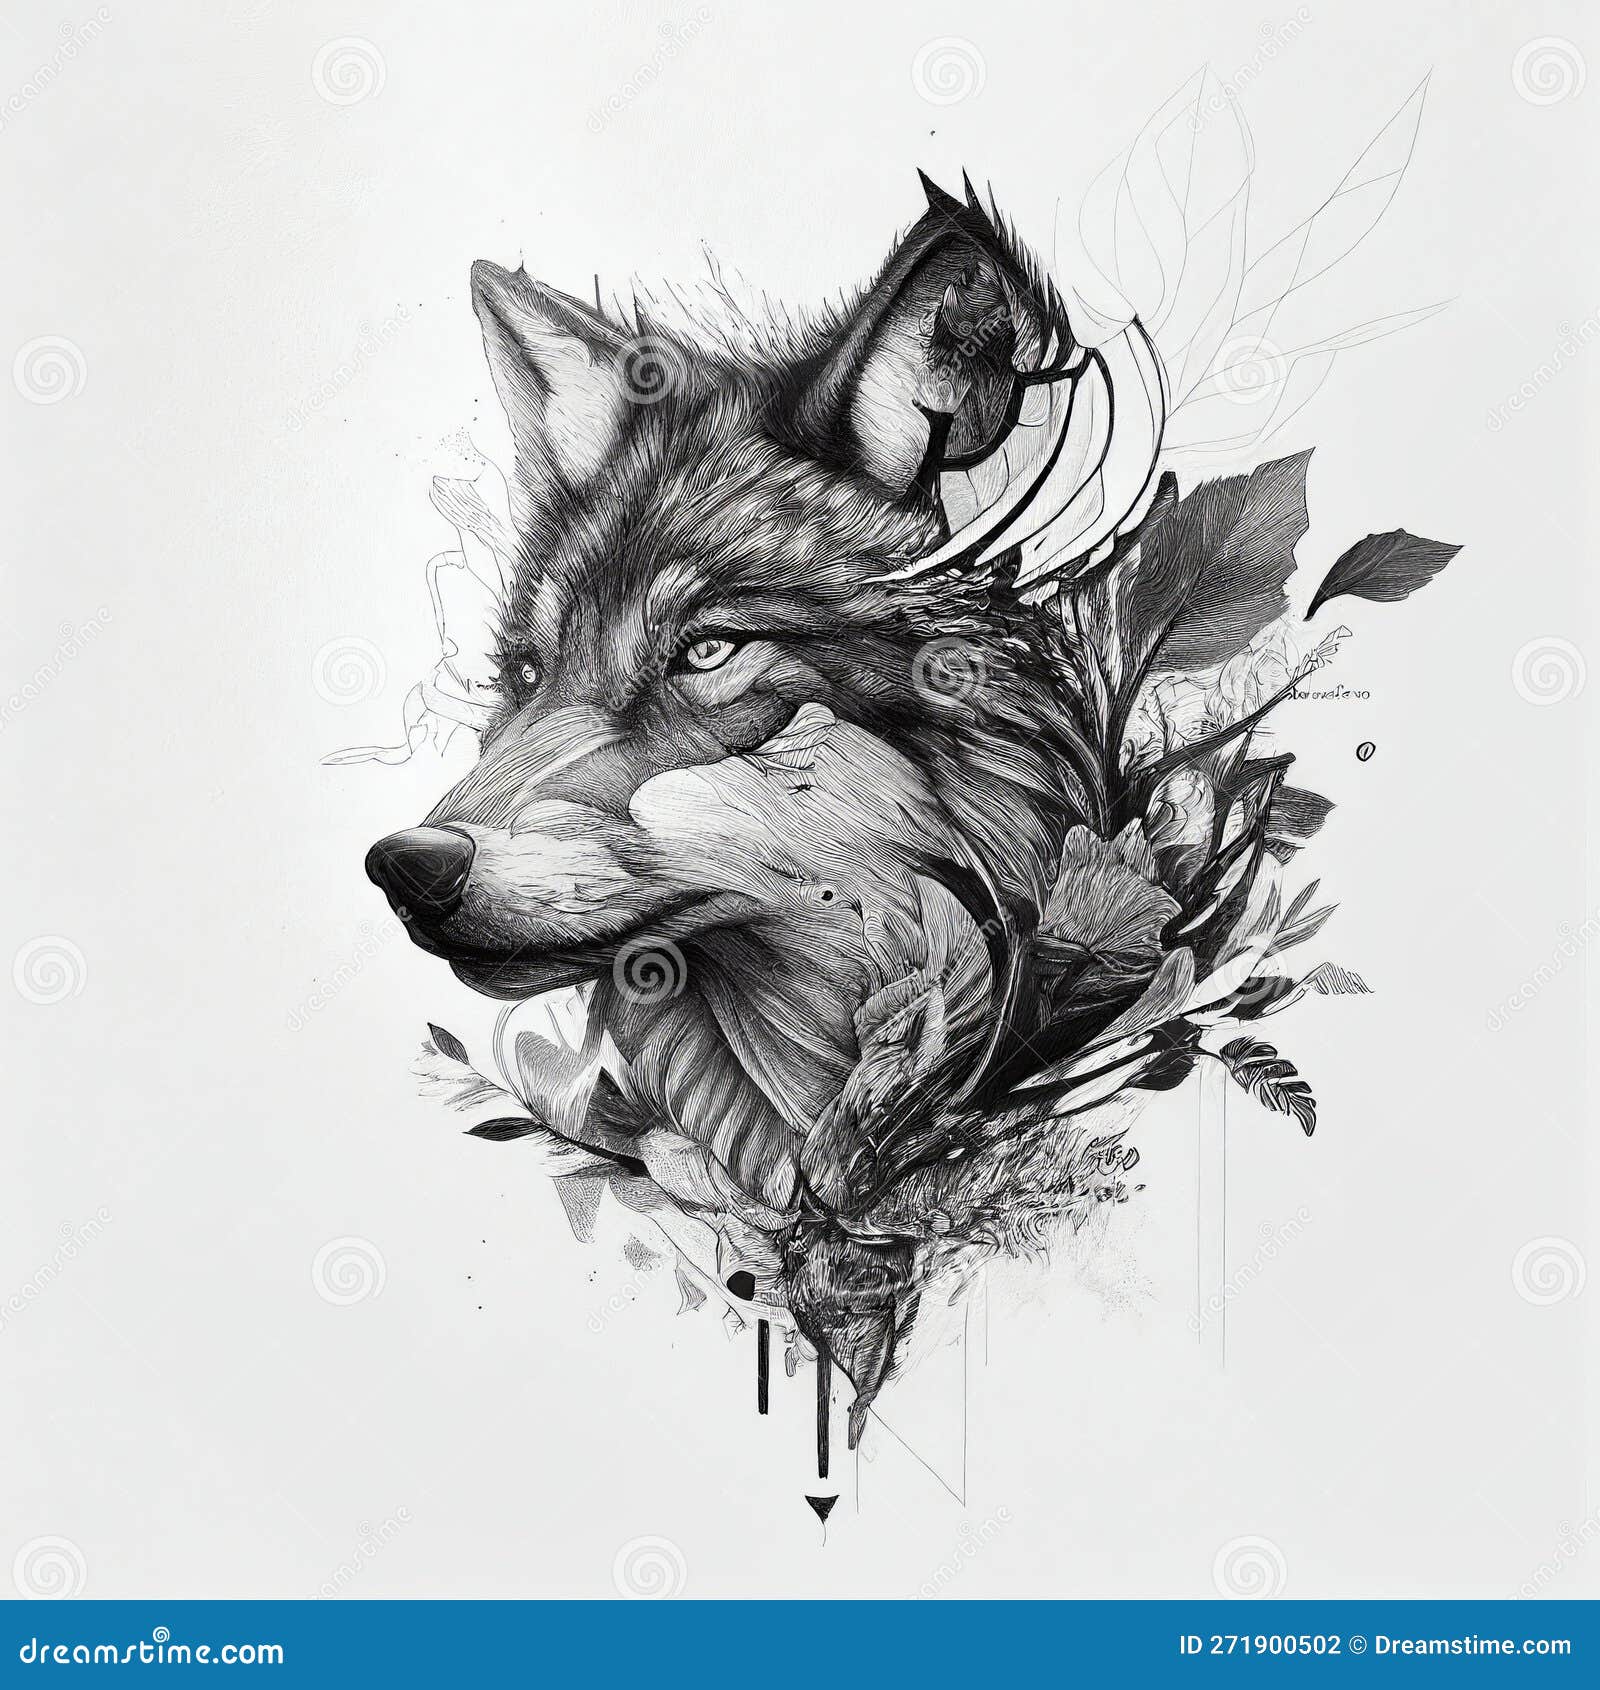 Alaskan Wolf Tattoo - Tattoo Shop and Piercing Studio Liverpool